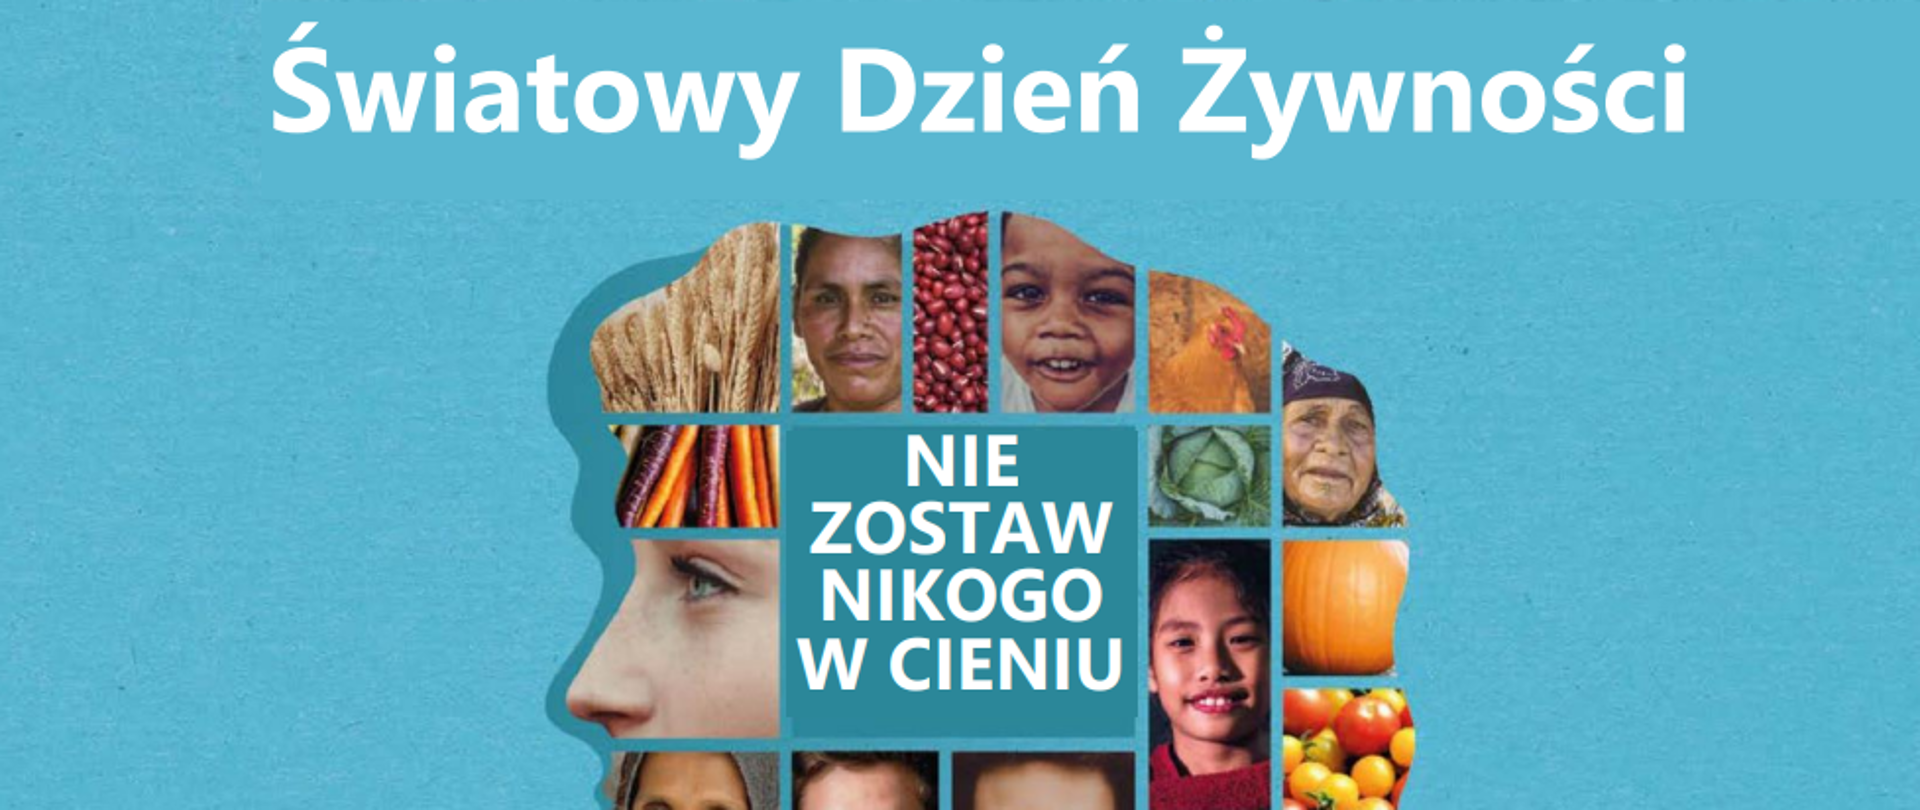 Plakat z napisem Światowy Dzień Żywności 2022.